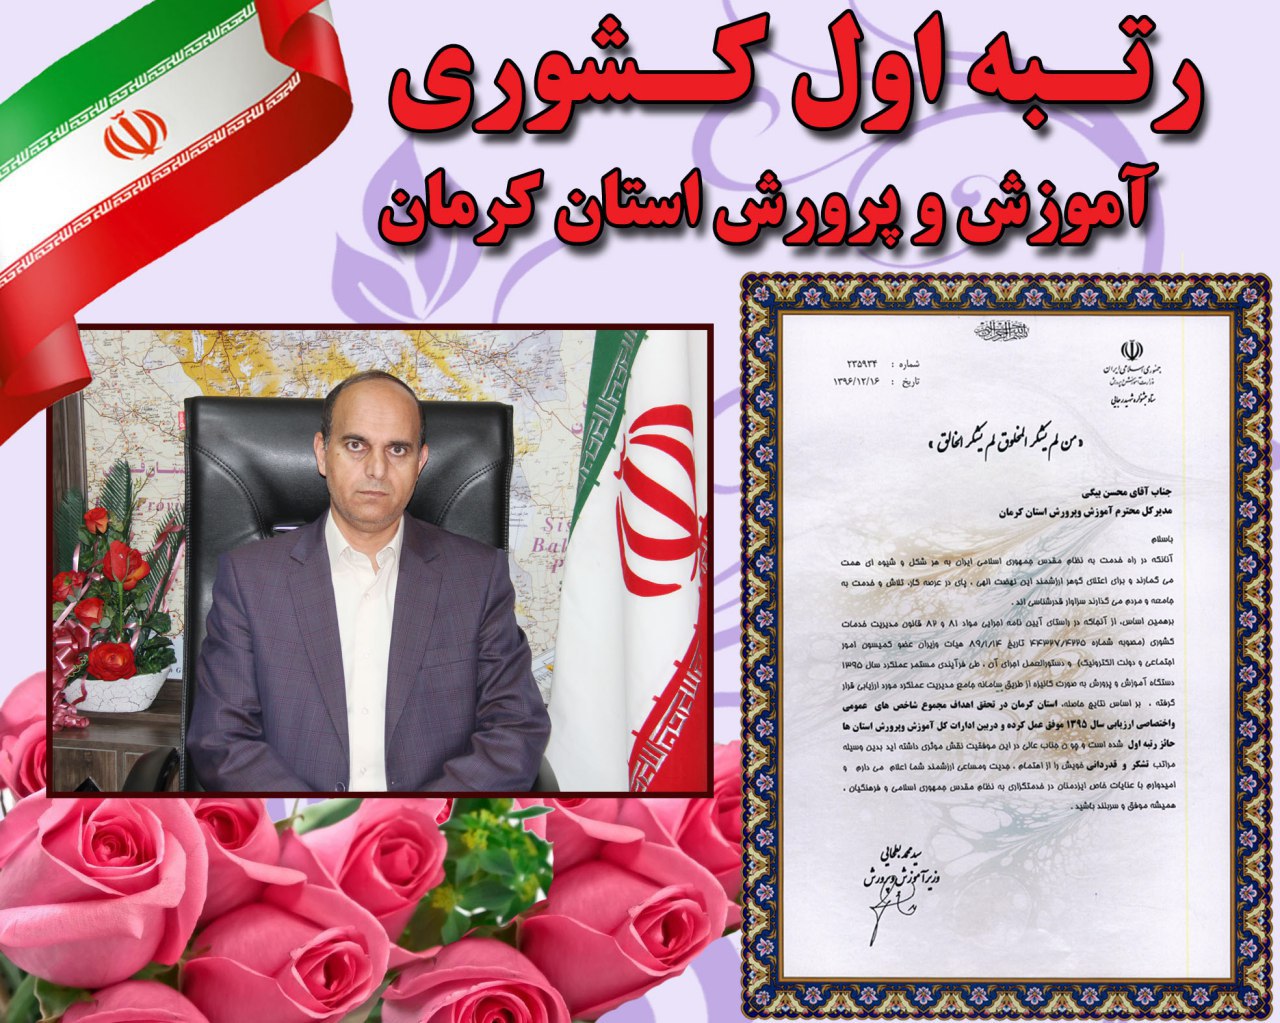 اداره کل آموزش و پرورش استان کرمان رتبه اول کشور را کسب کرد